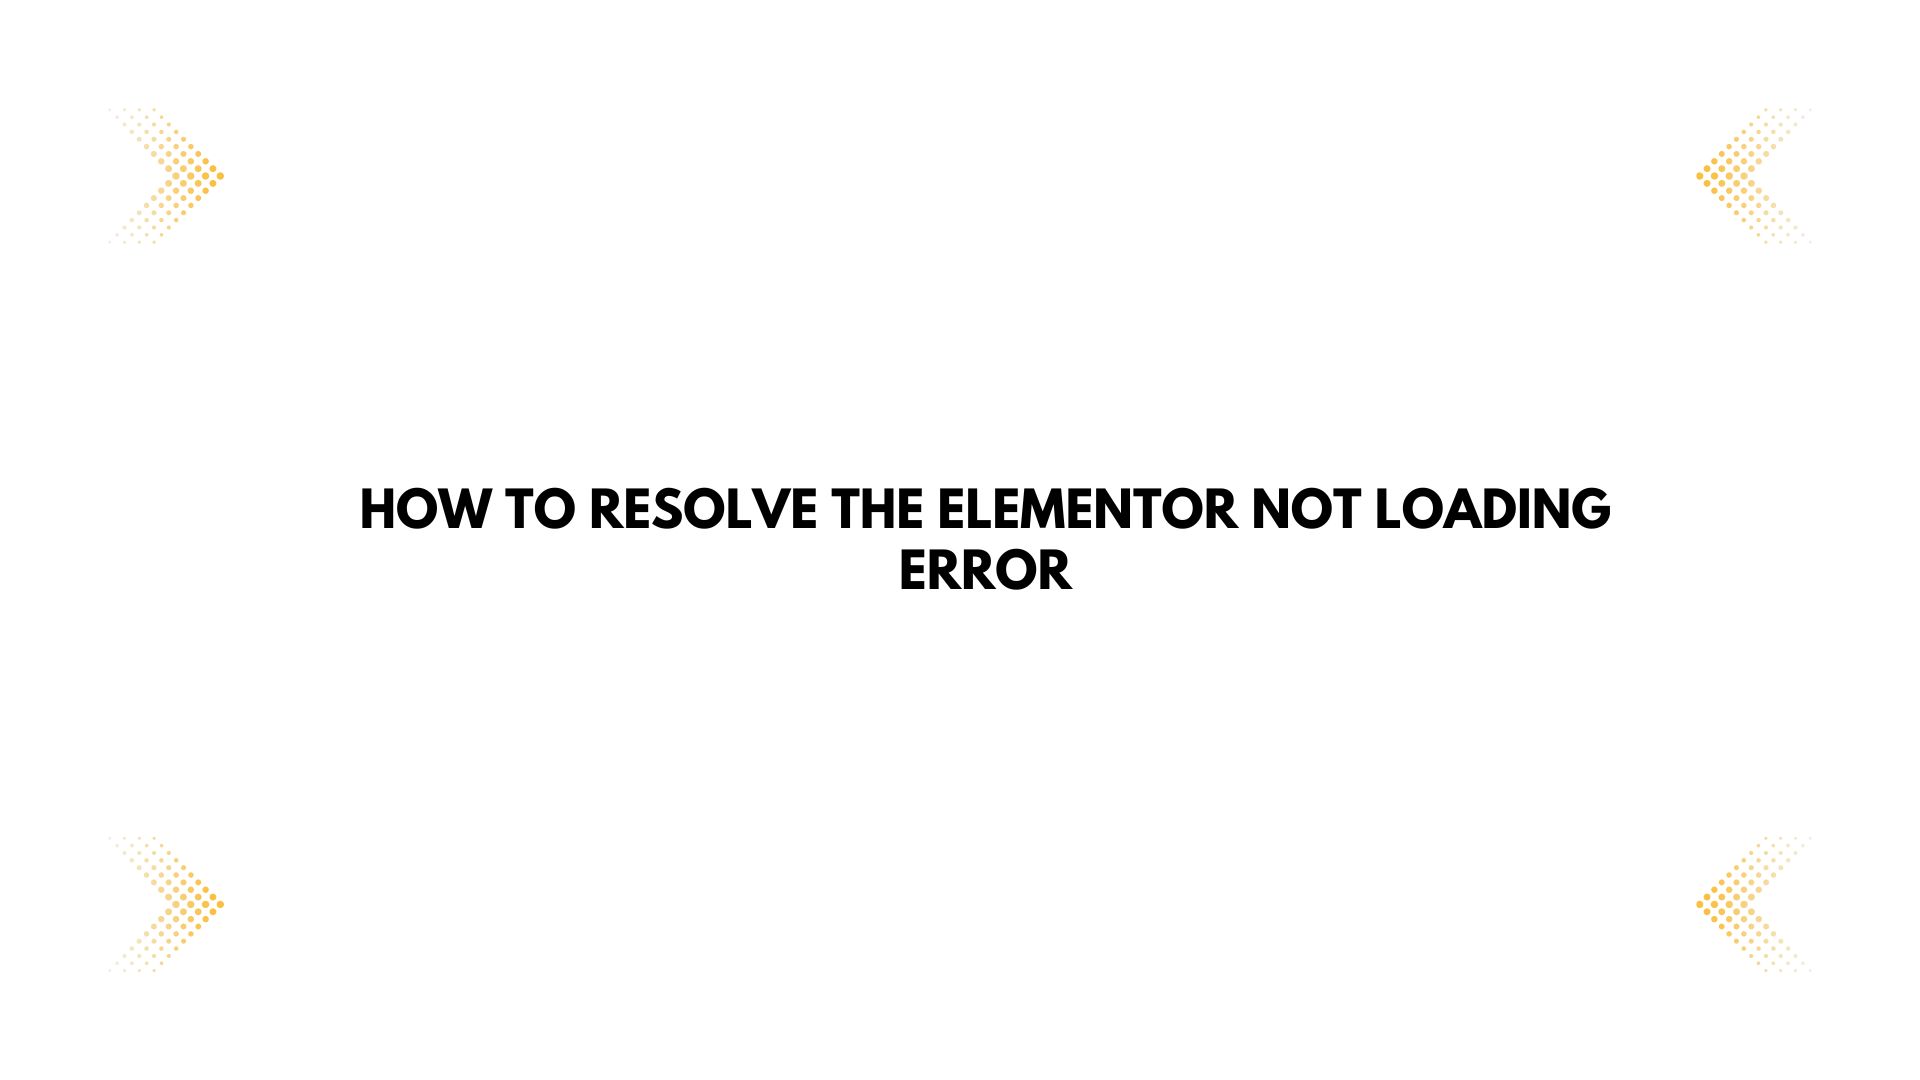 Elementor not loading